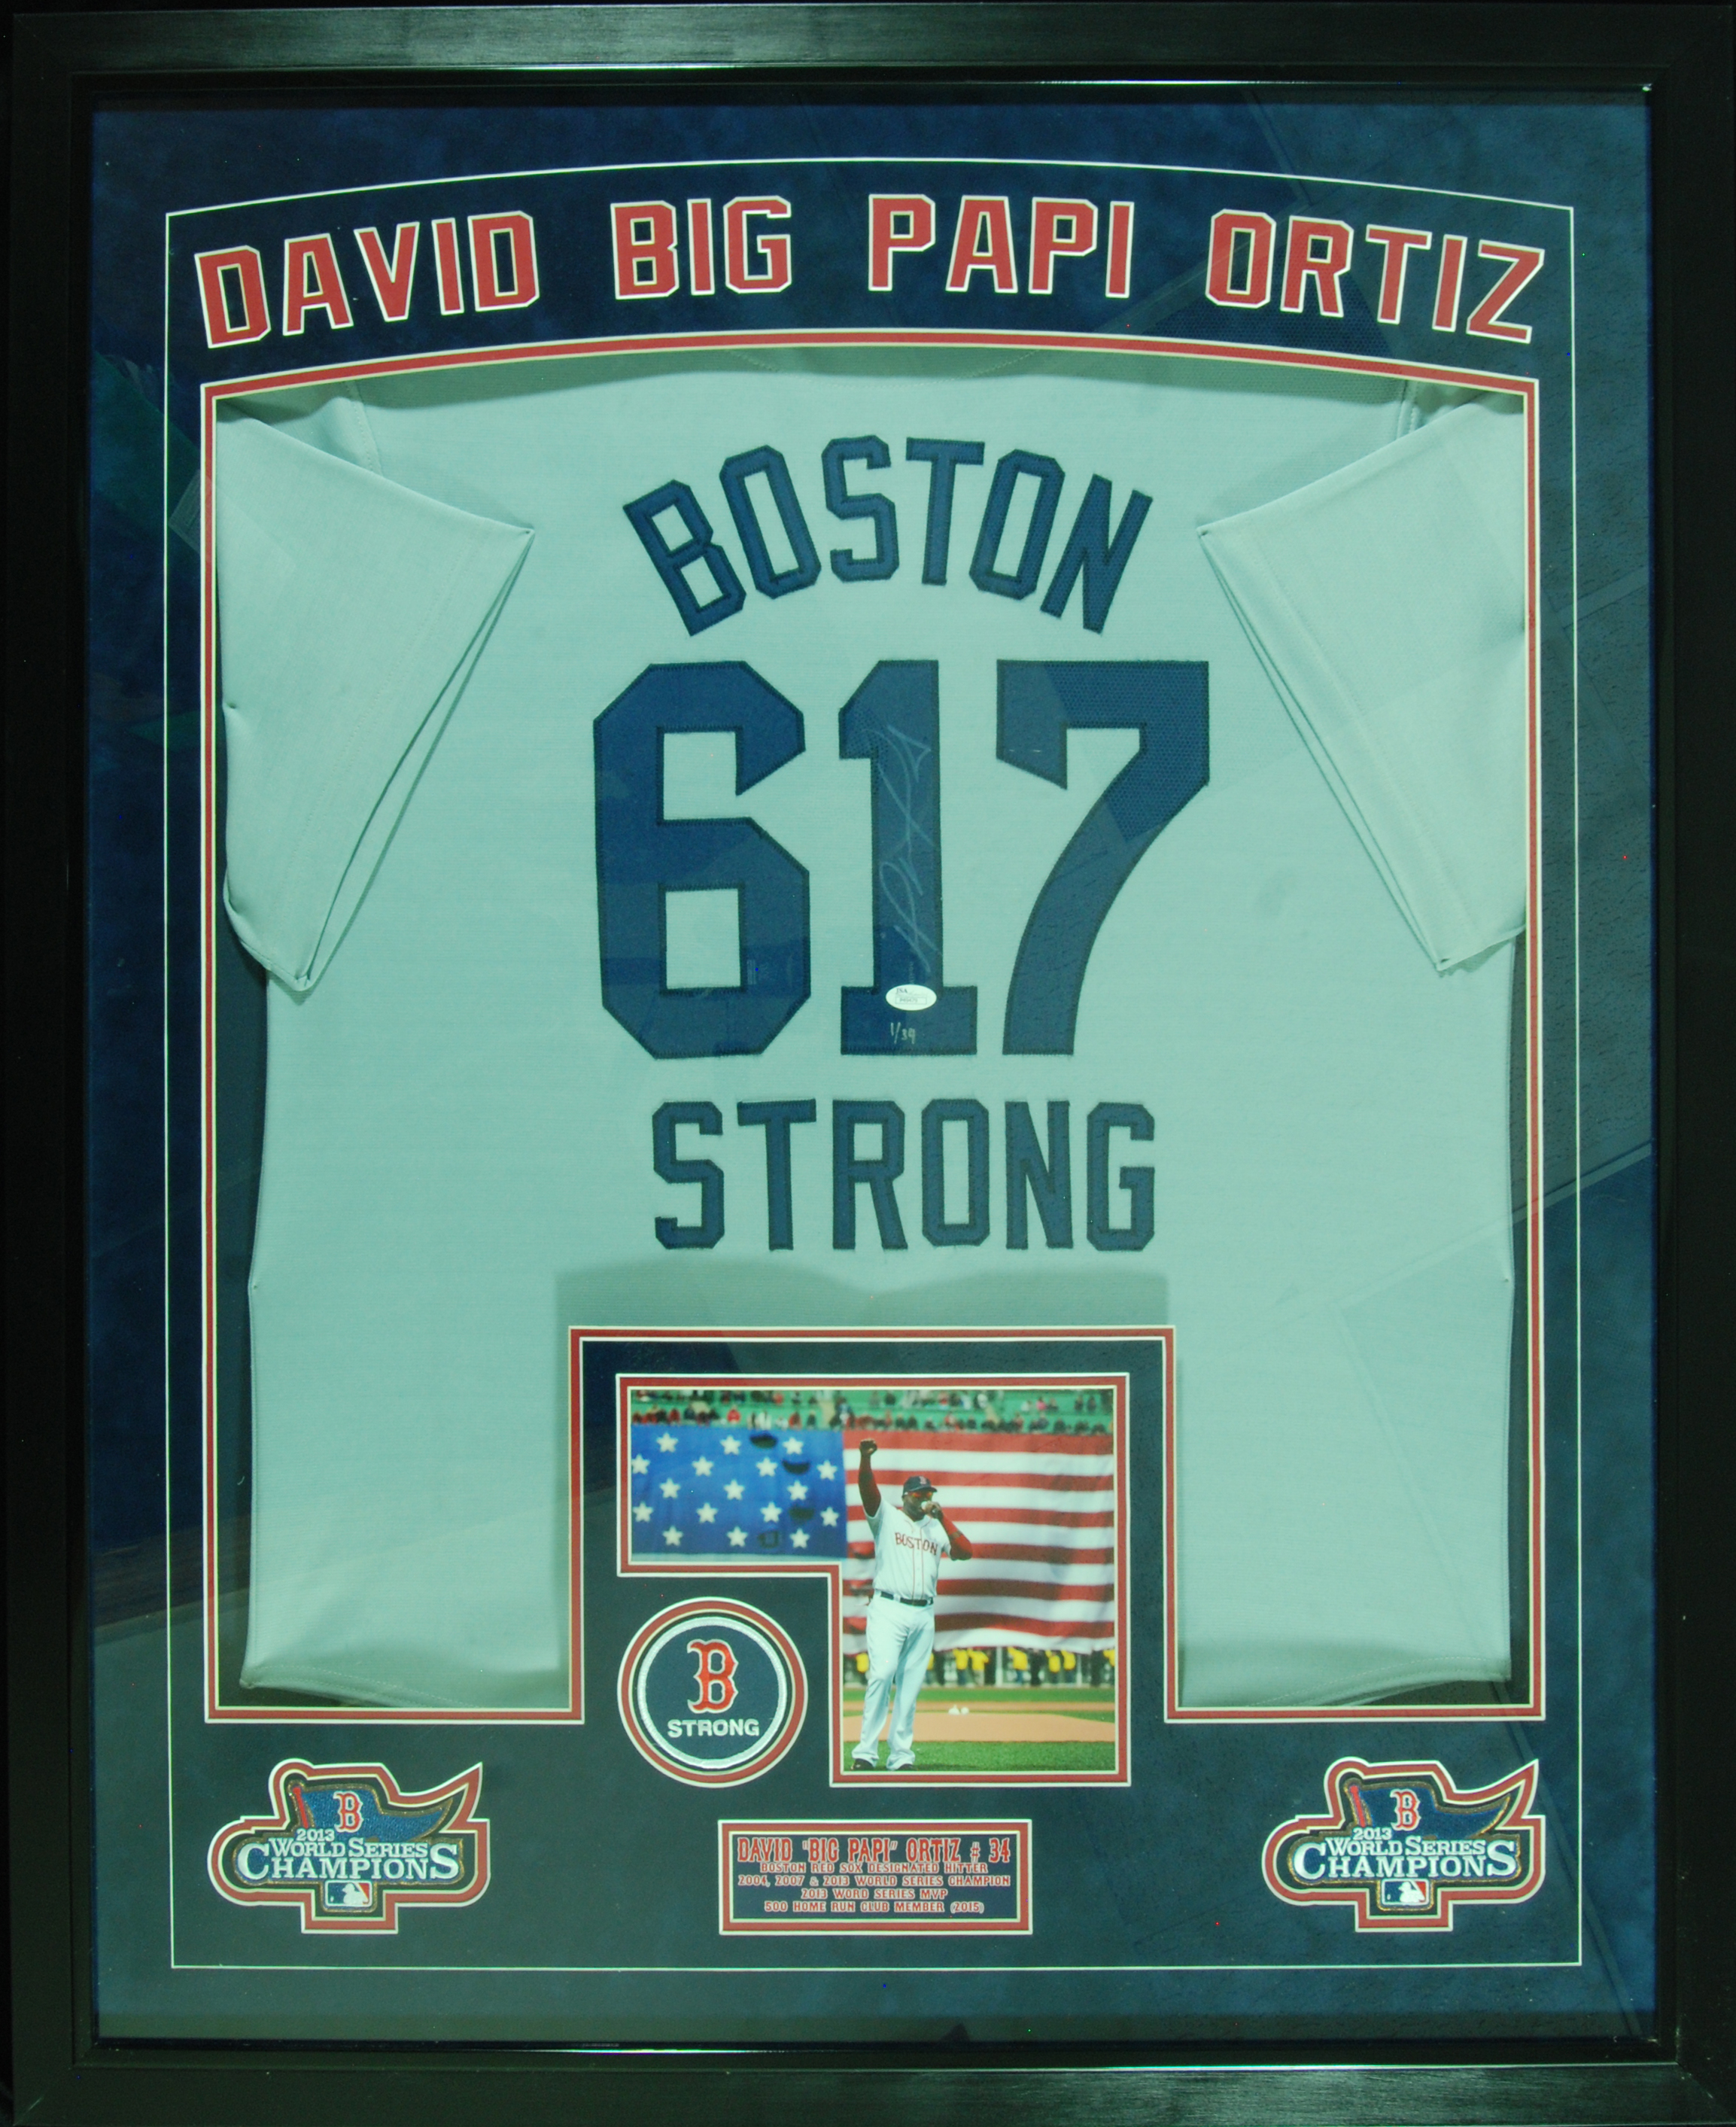 boston 617 strong